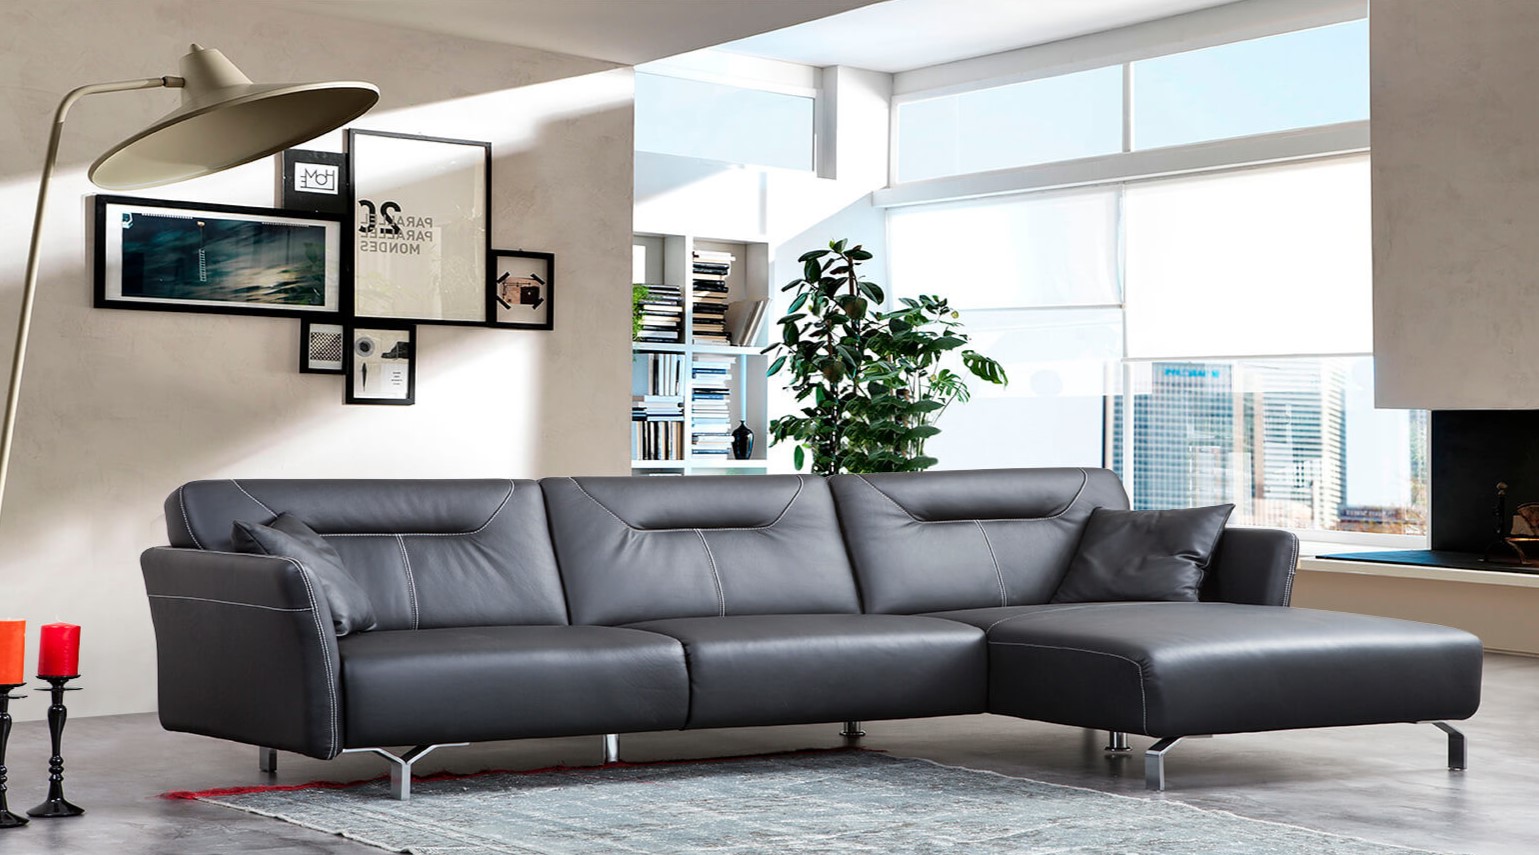 Черный кожаный диван с металлическими ножкам прекрасно дополнит интерьер в стиле минимализм